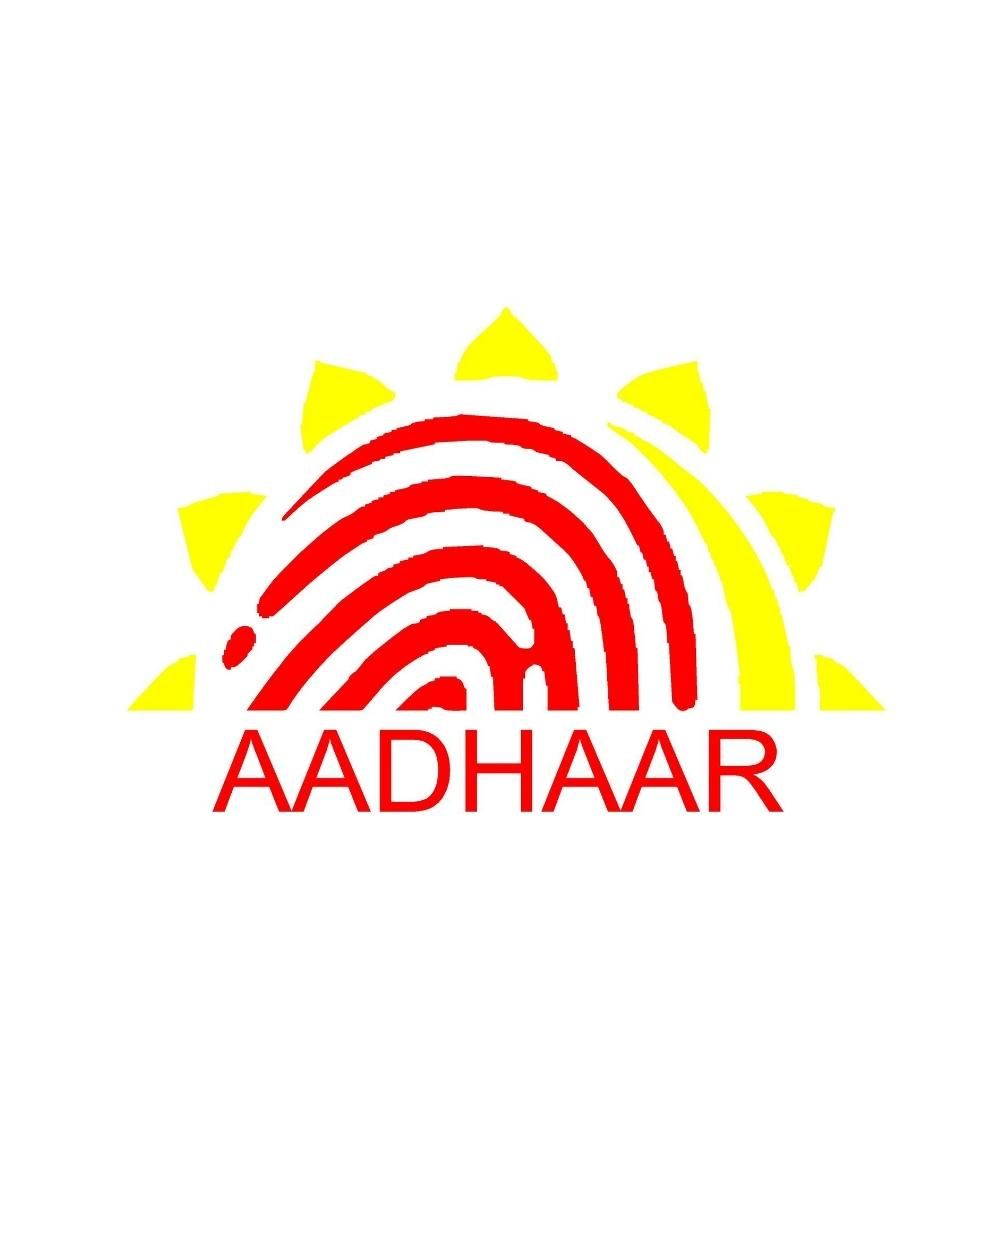 Aadhaar - Wikipedia